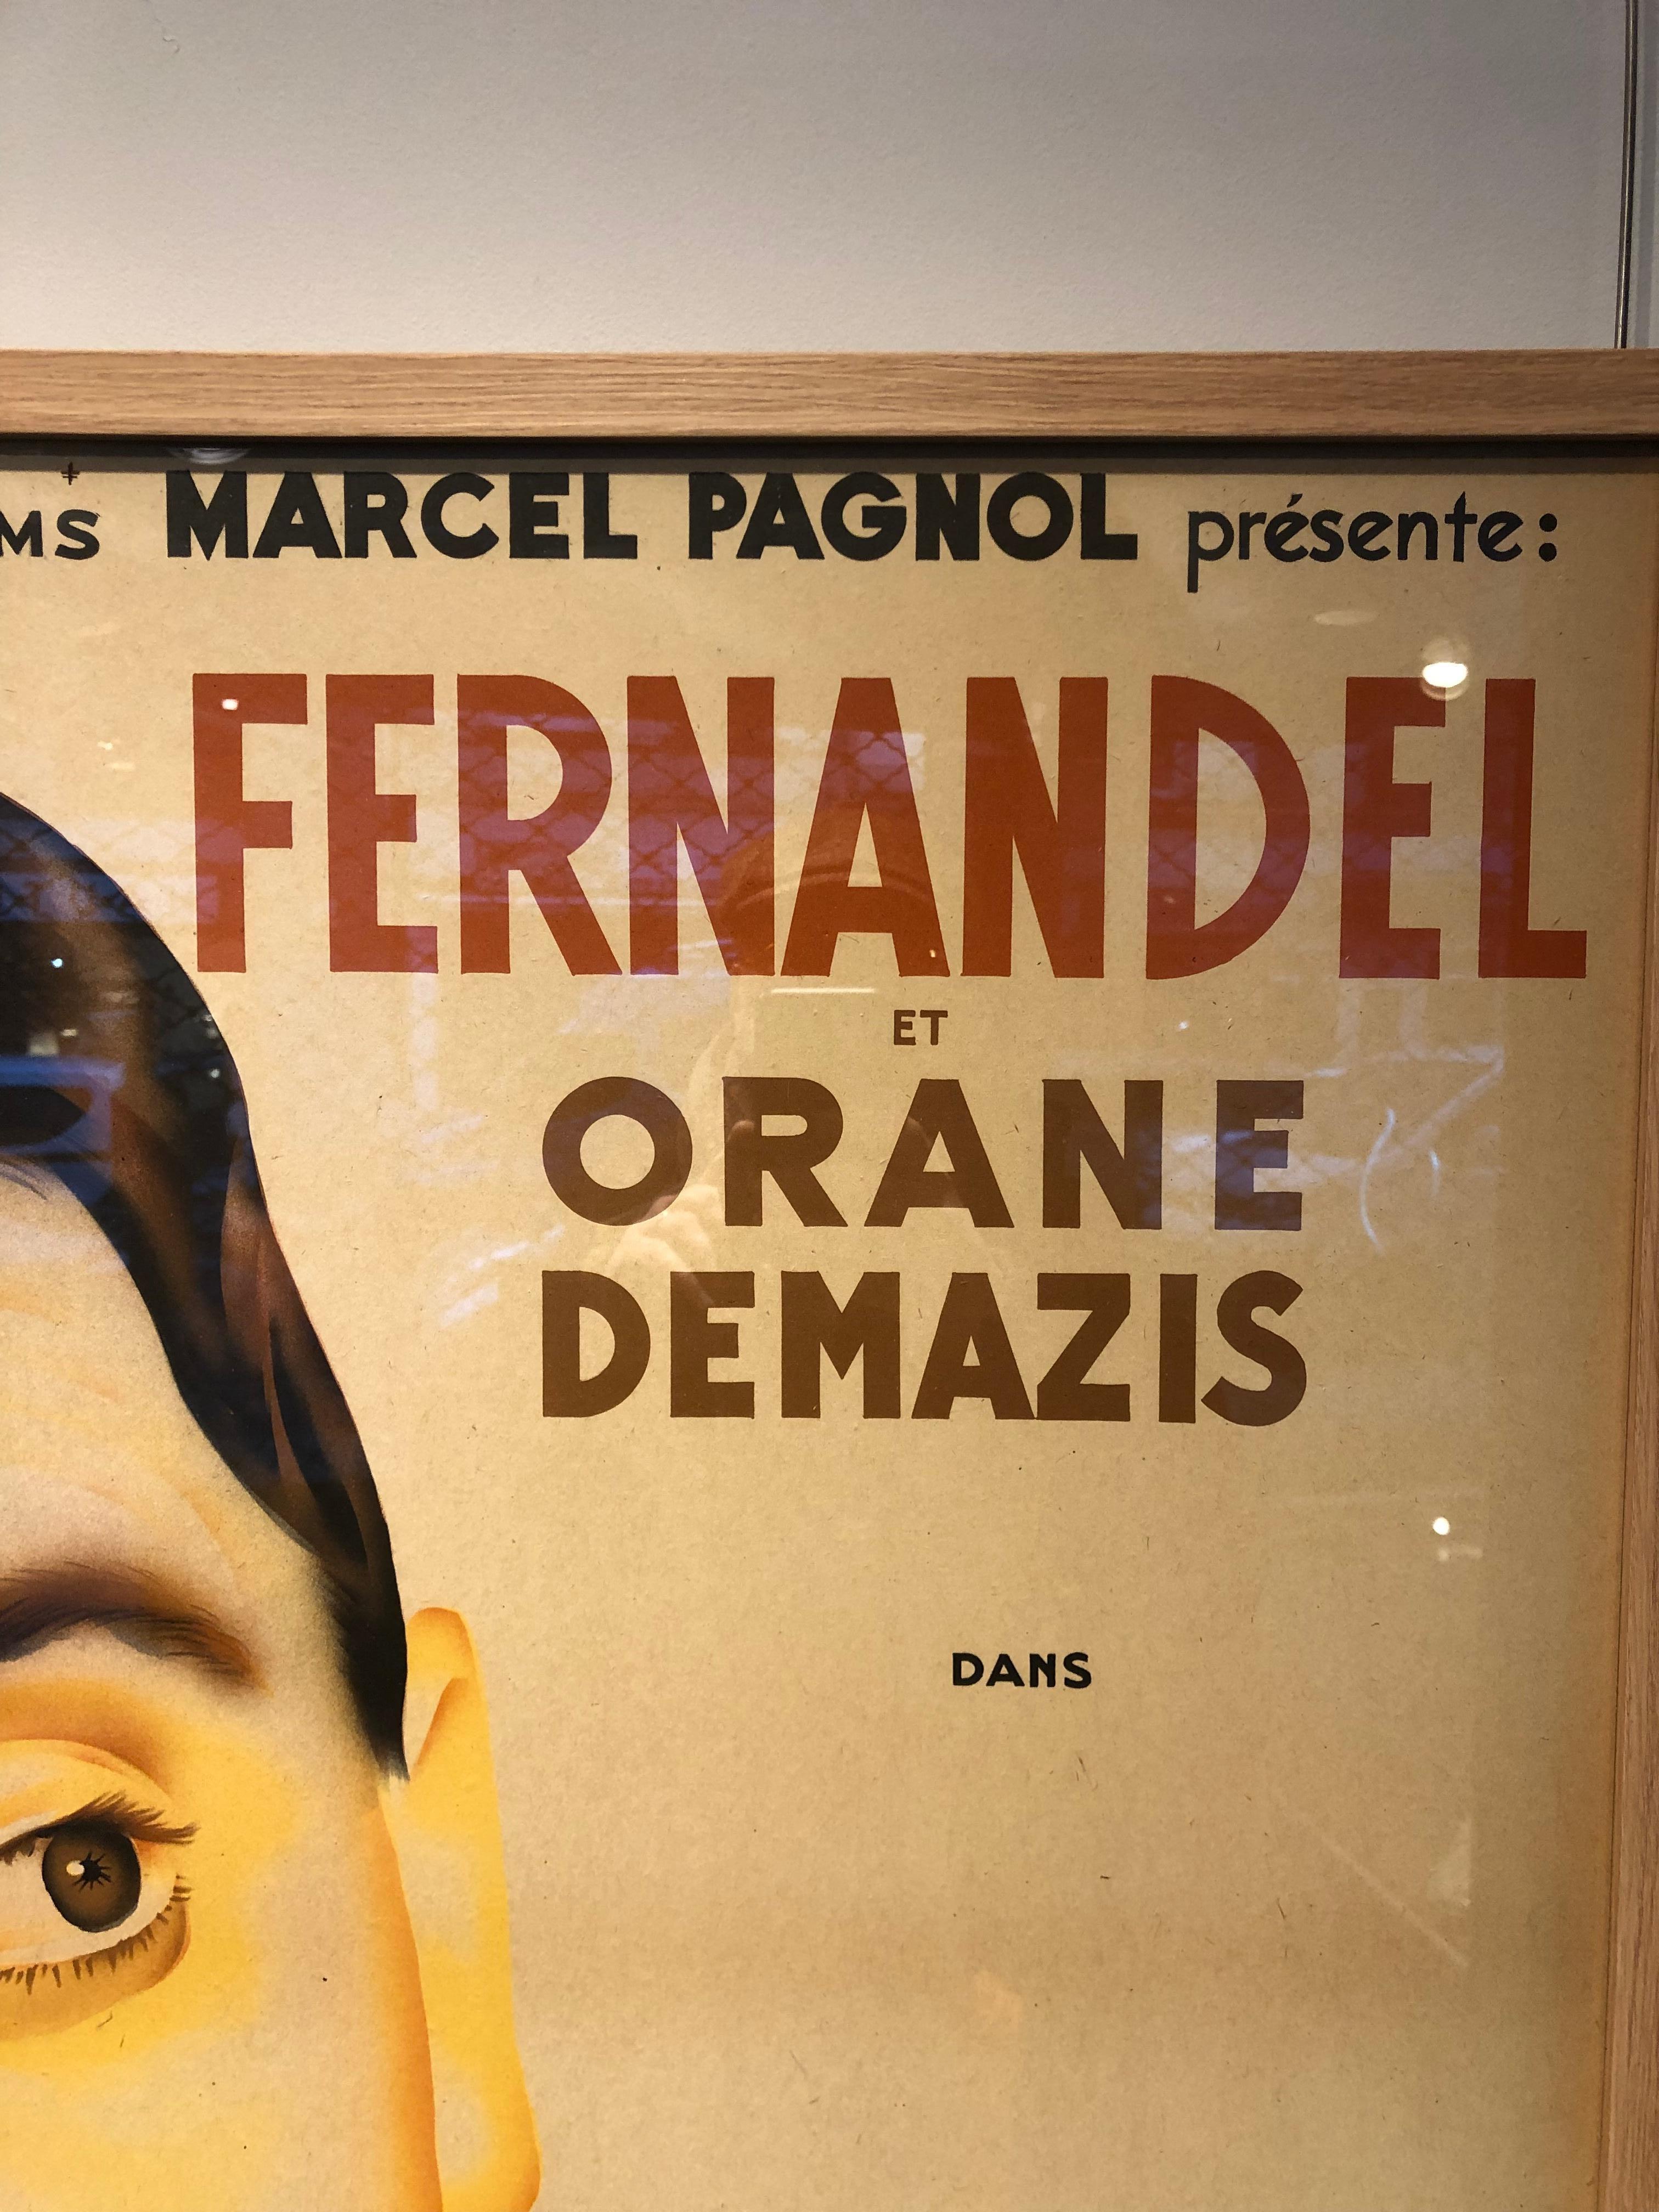 Monacan Art Deco French Film Poster “le schpountz” de M.Pagnol For Sale